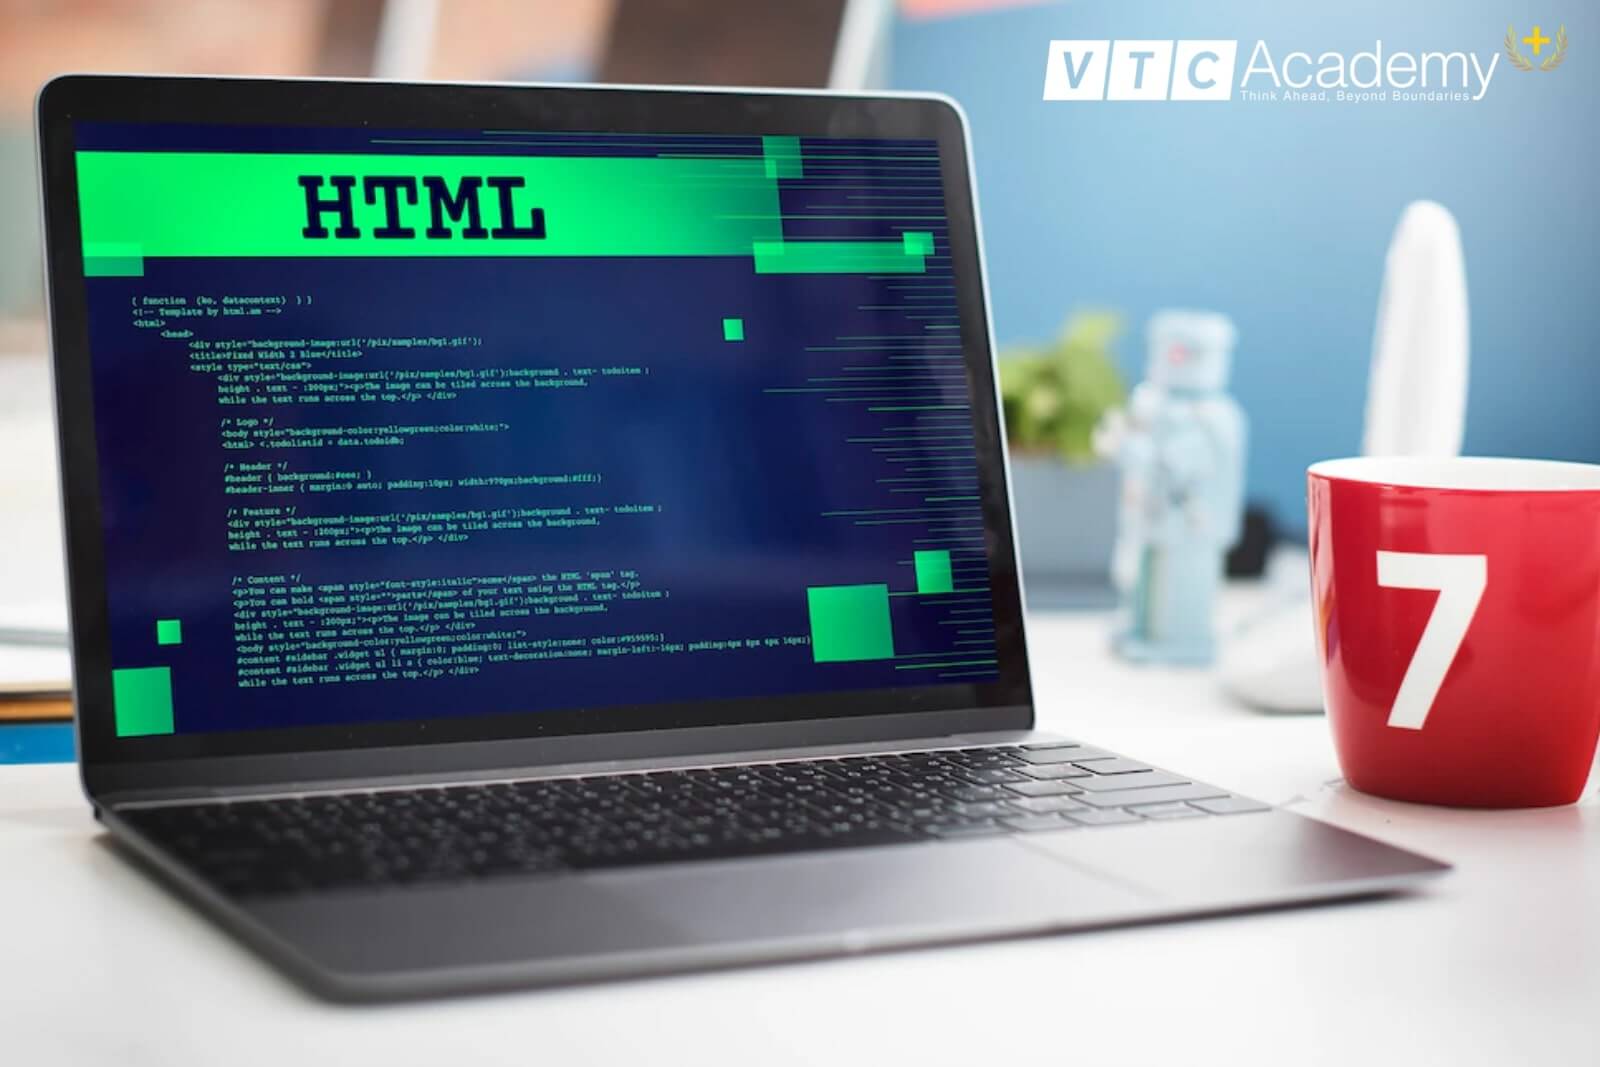 HTML và ngôn ngữ đánh dấu cơ bản: Hãy khám phá những kiến thức căn bản về HTML và ngôn ngữ đánh dấu cơ bản, giúp bạn hiểu rõ hơn về cách hoạt động của website và phát triển các ứng dụng web. Với những tri thức mới, bạn có thể tạo ra những sản phẩm tuyệt vời và đạt được thành công trong lĩnh vực này!